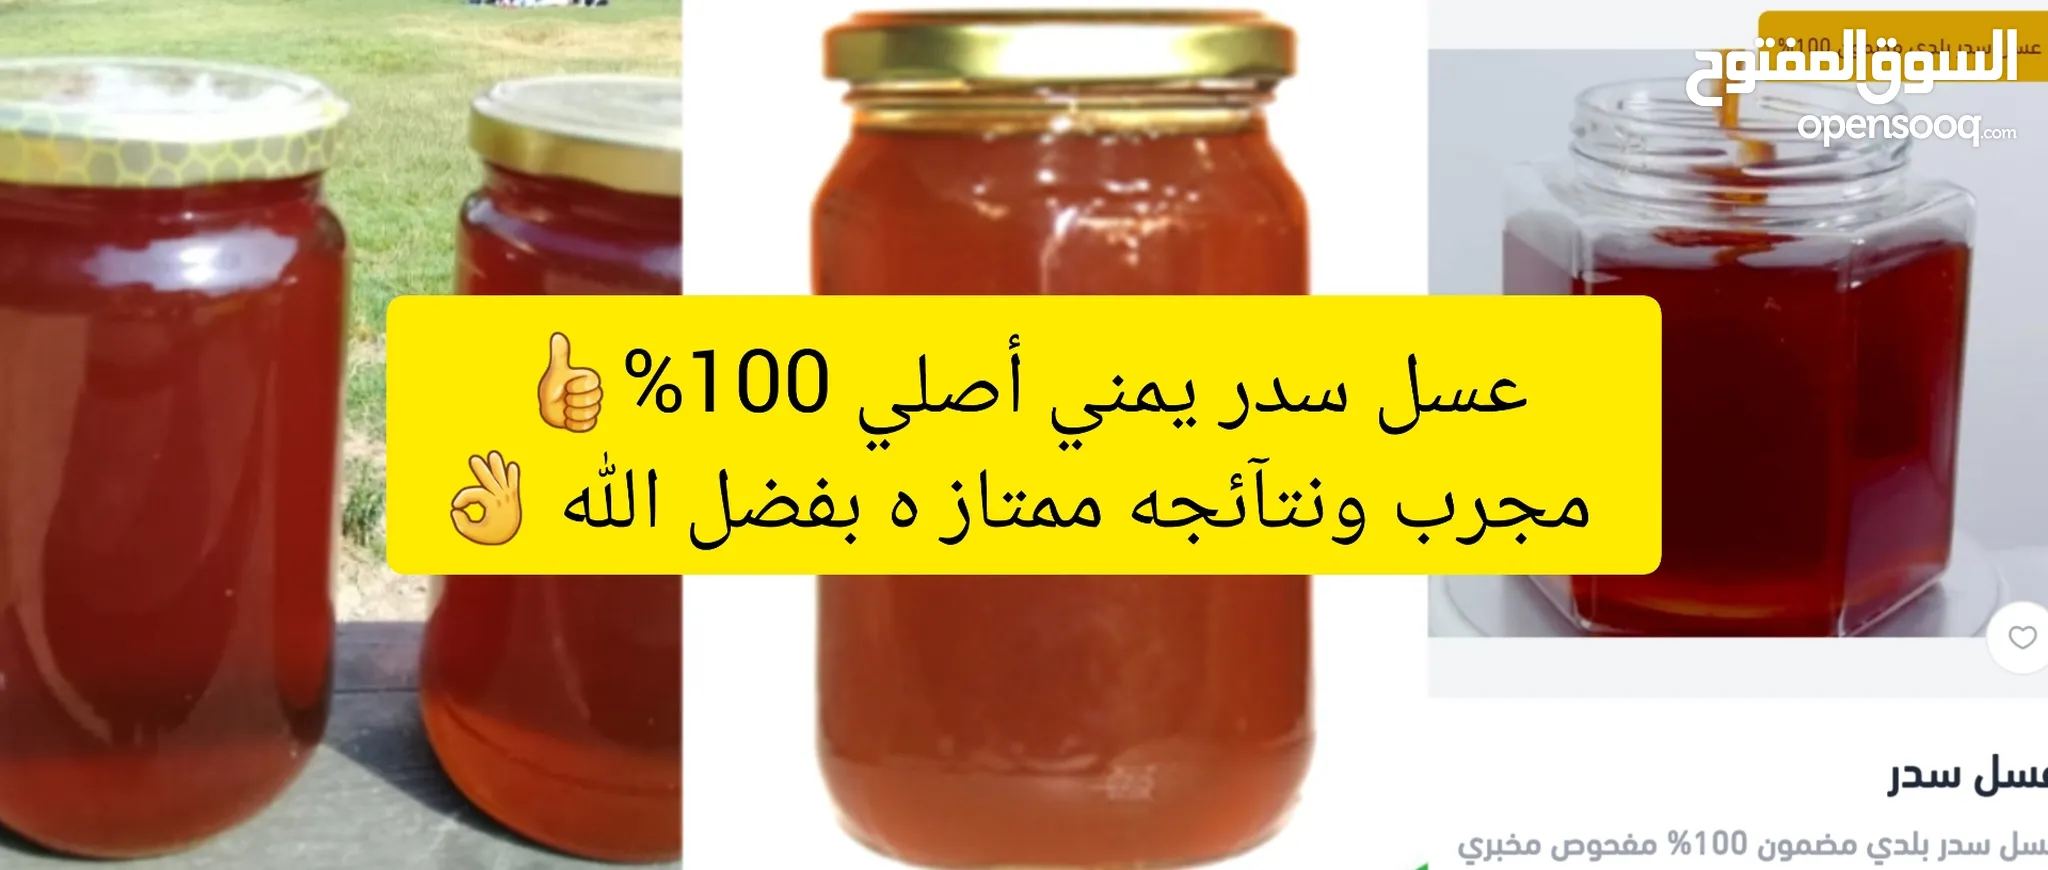 موقع #1 لبيع العسل : افضل الانواع للبيع : ارخص الاسعار : عسل مانوكا :اسود  عسل ابيض في الرياض | السوق المفتوح